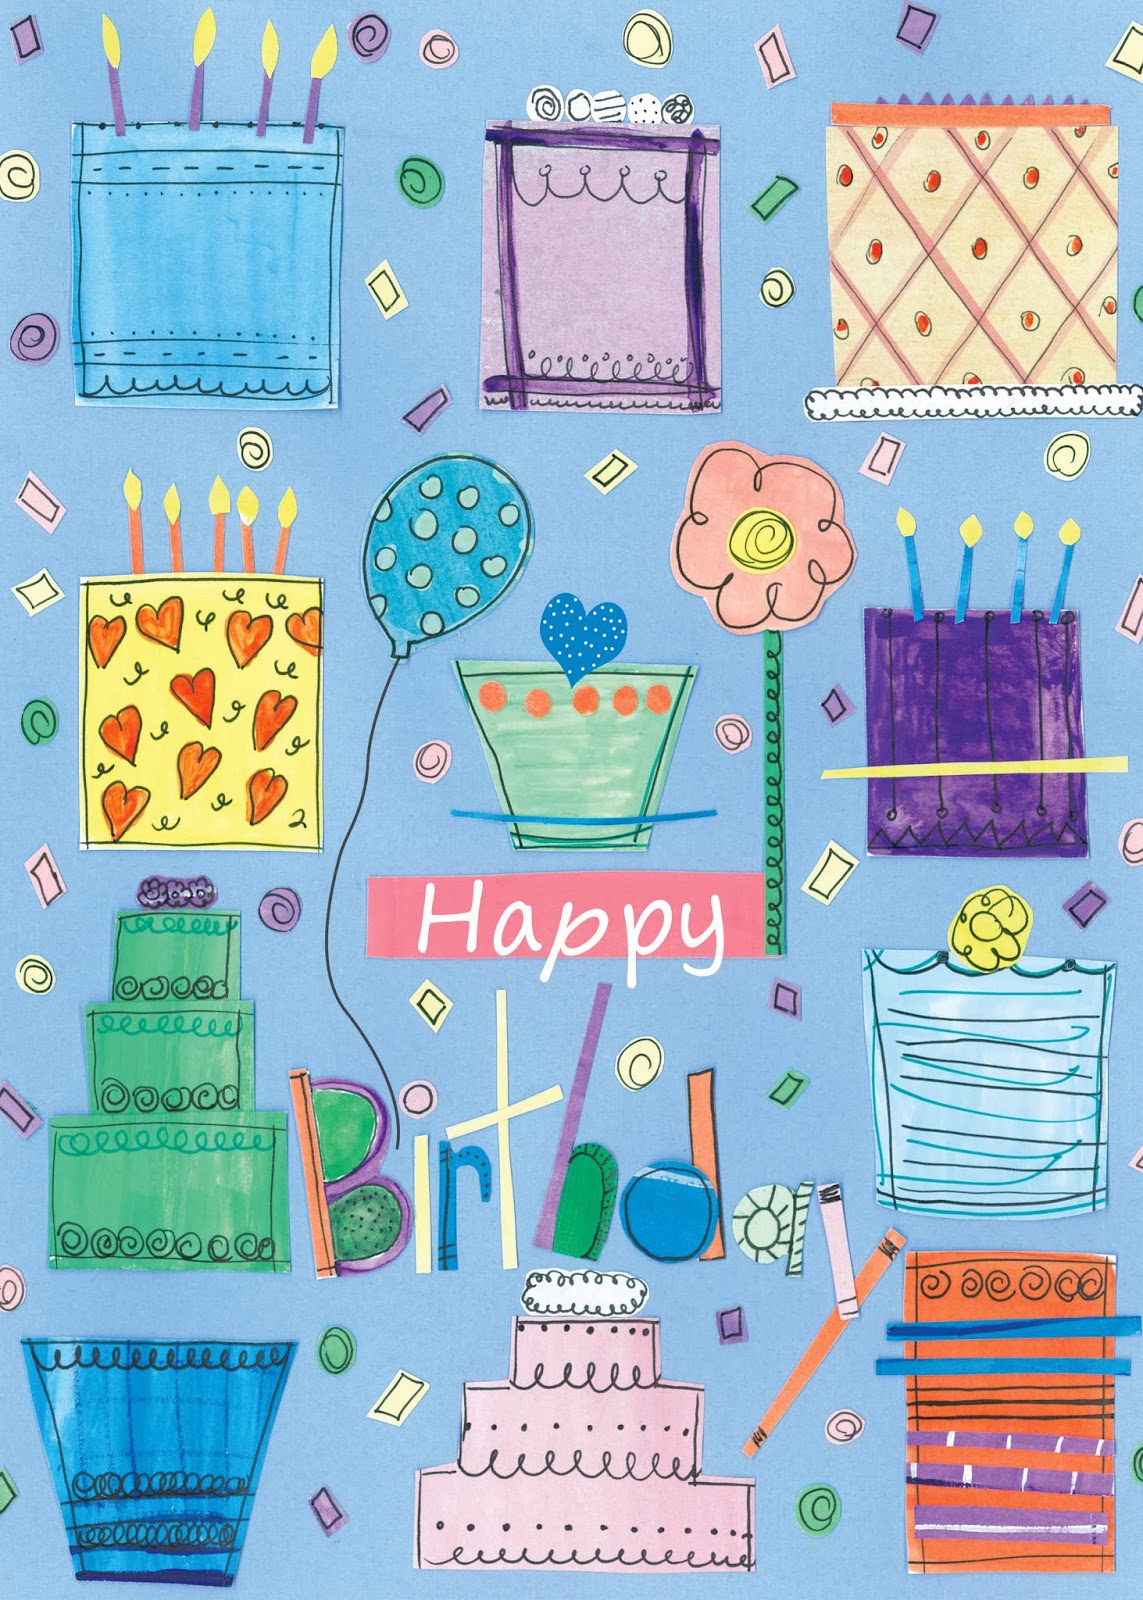 Rebekah Darling's Art Blog: Happy Birthday!